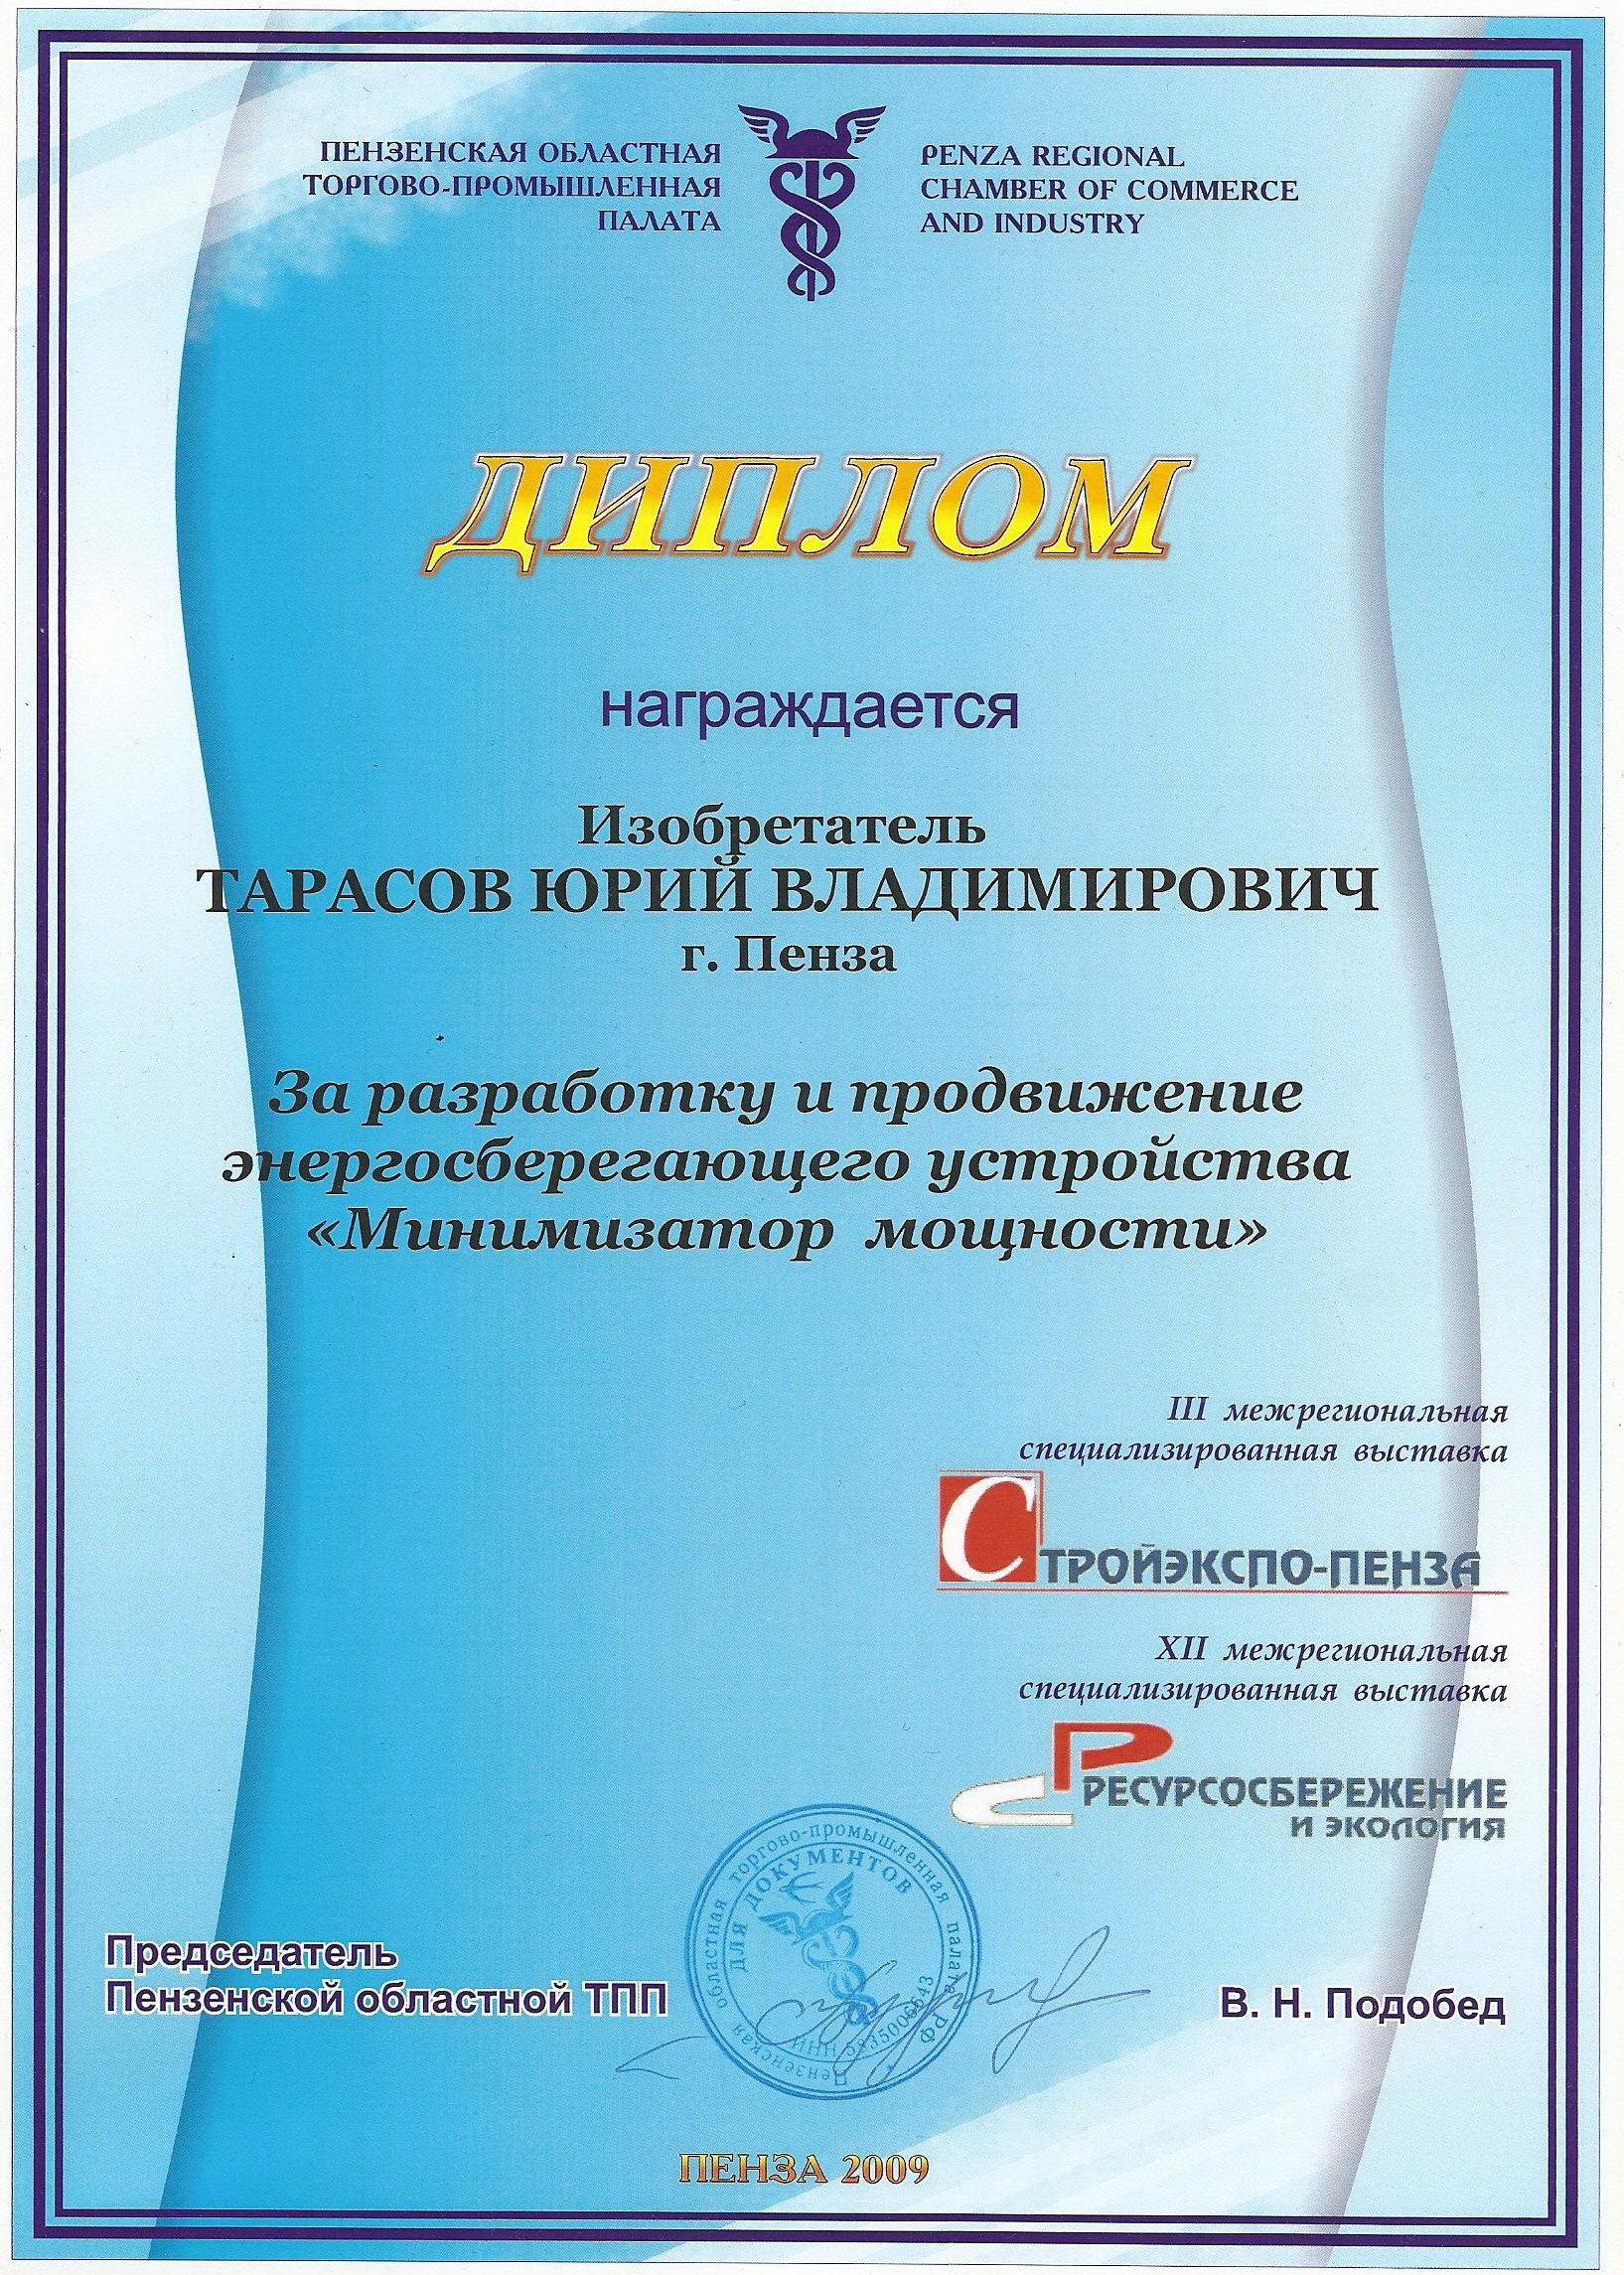 Диплом минимизатор Пенза 2009